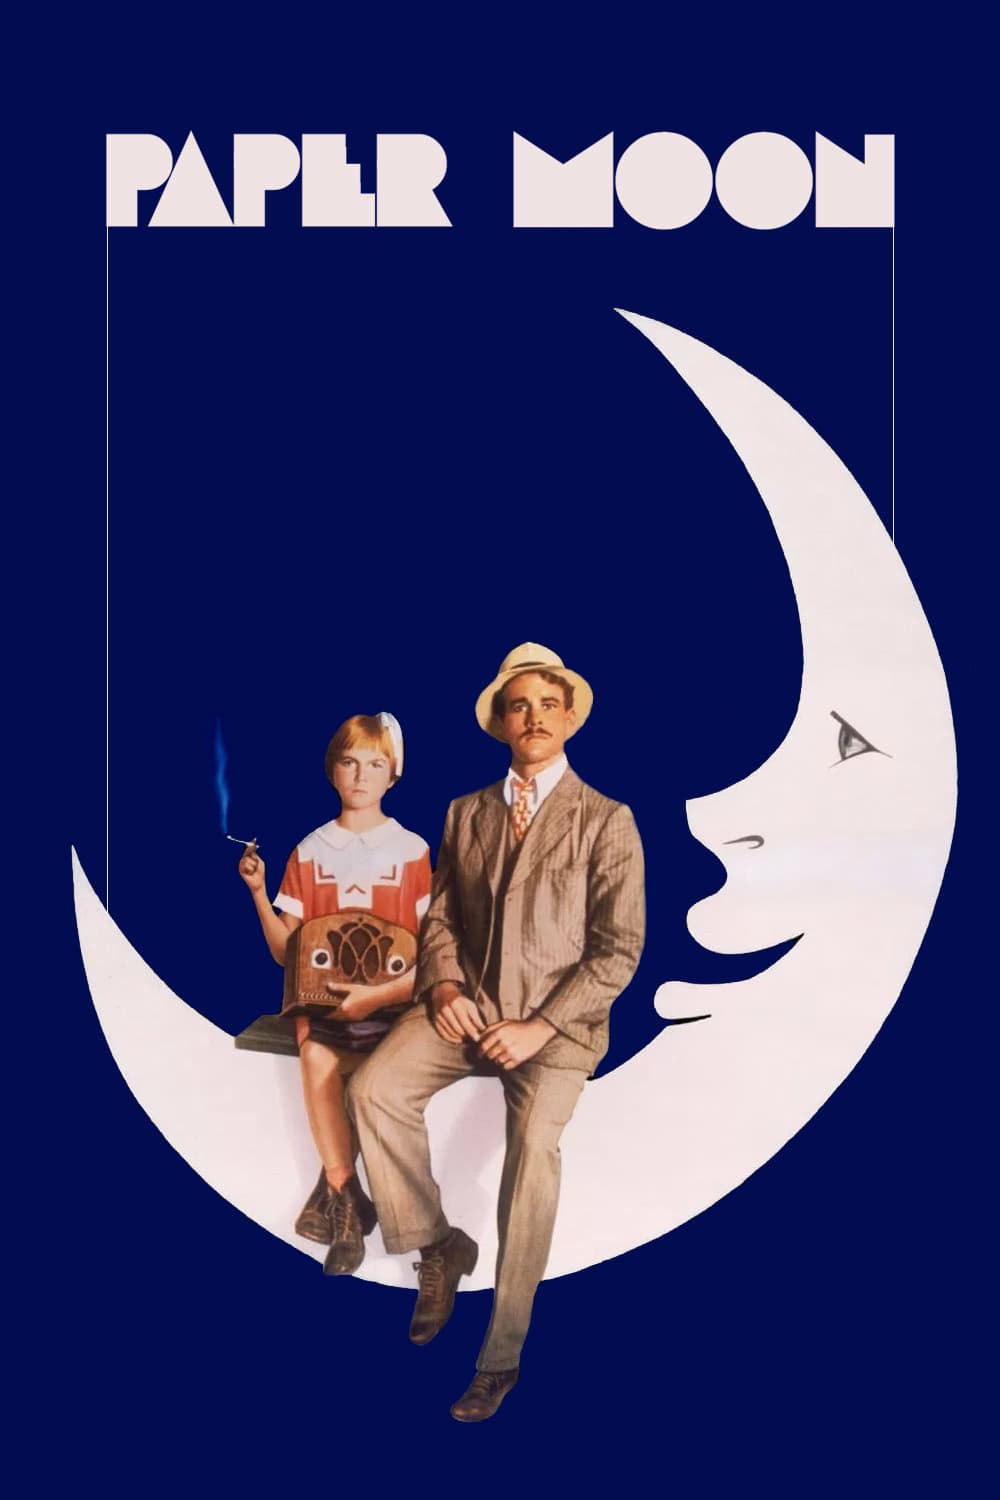 Plakat von "Paper Moon"